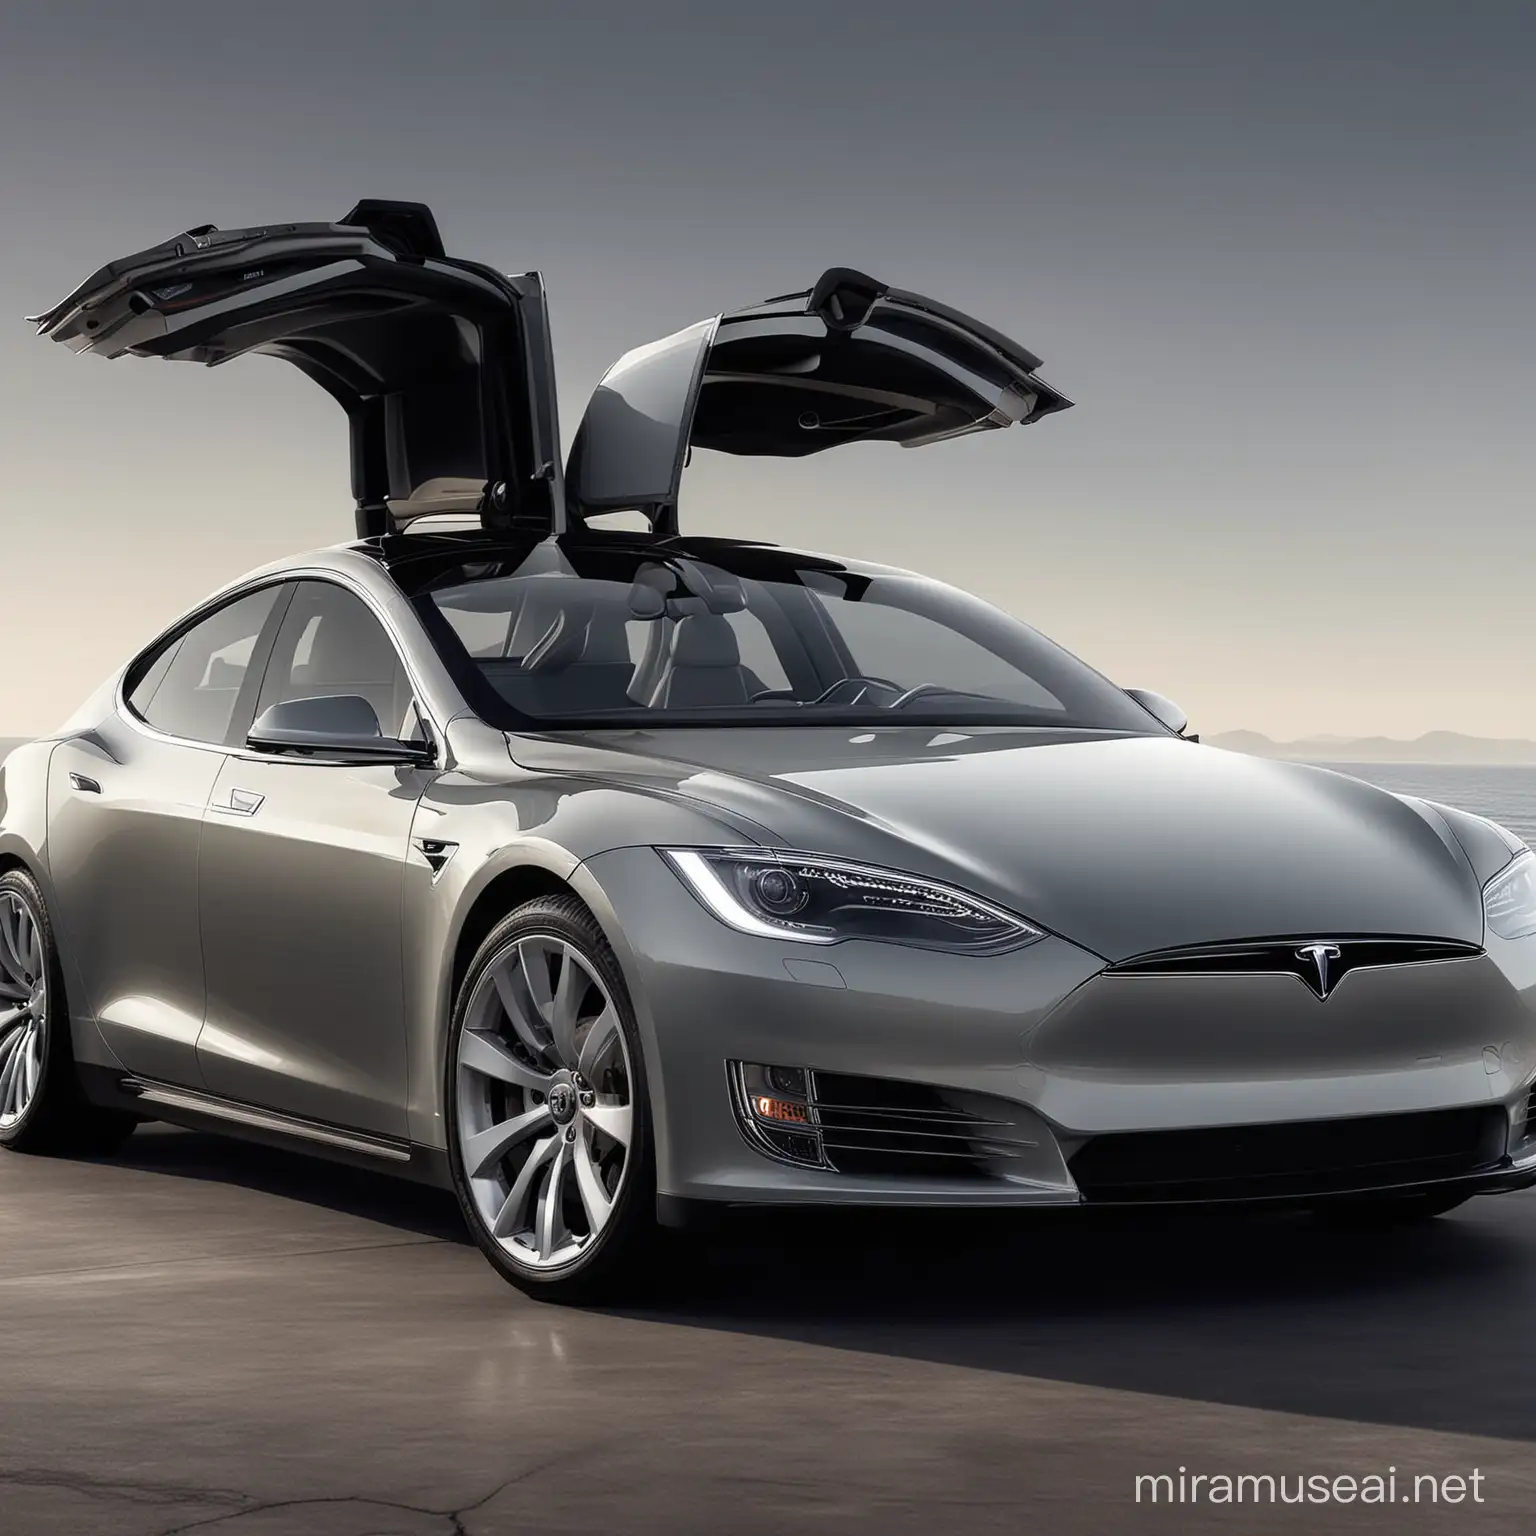  Tesla  Descripción de la imagen: Muestra un Tesla Model S, un automóvil eléctrico de lujo. Contexto: Tesla ha revolucionado la industria con sus vehículos eléctricos de alto rendimiento y tecnología innovadora. Destacar características: Diseño elegante, autonomía líder en su clase y tecnología de conducción autónoma.